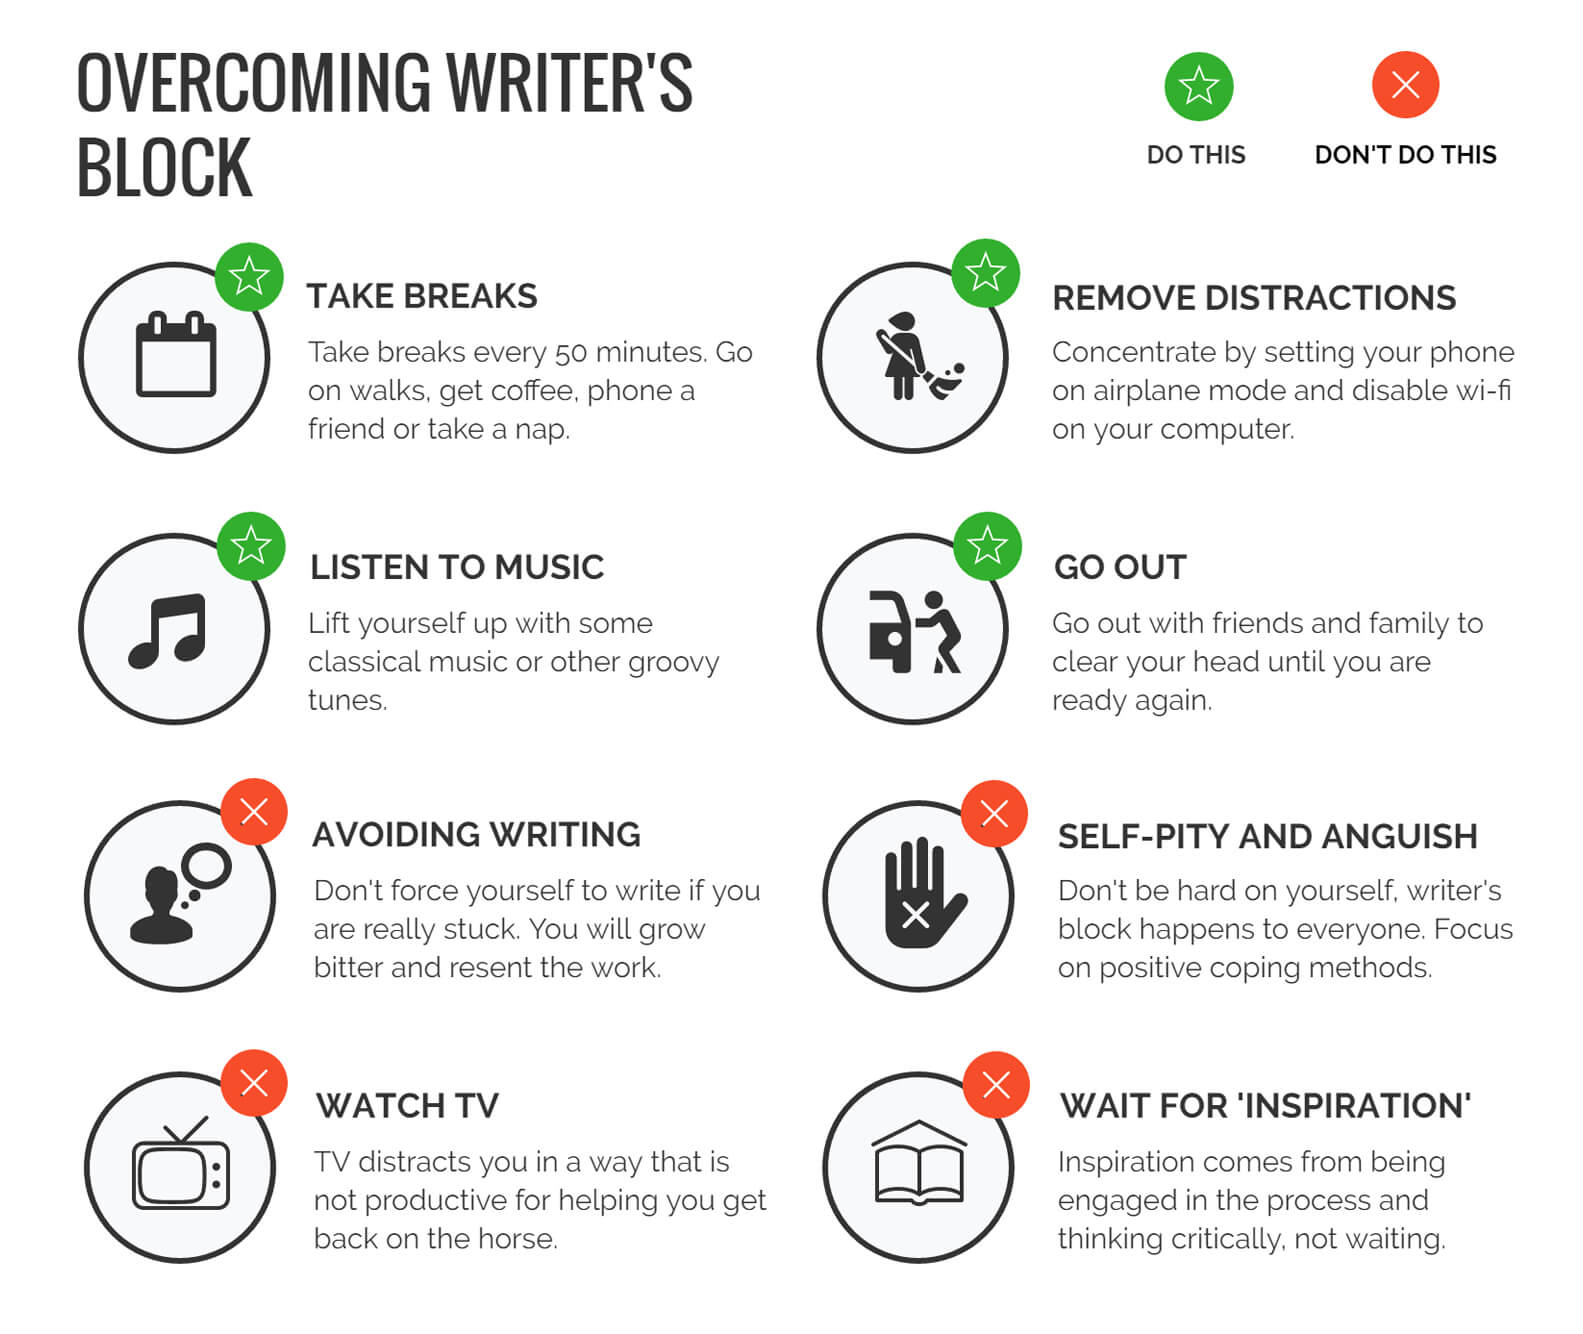 Steps to Overcoming Writer's Block